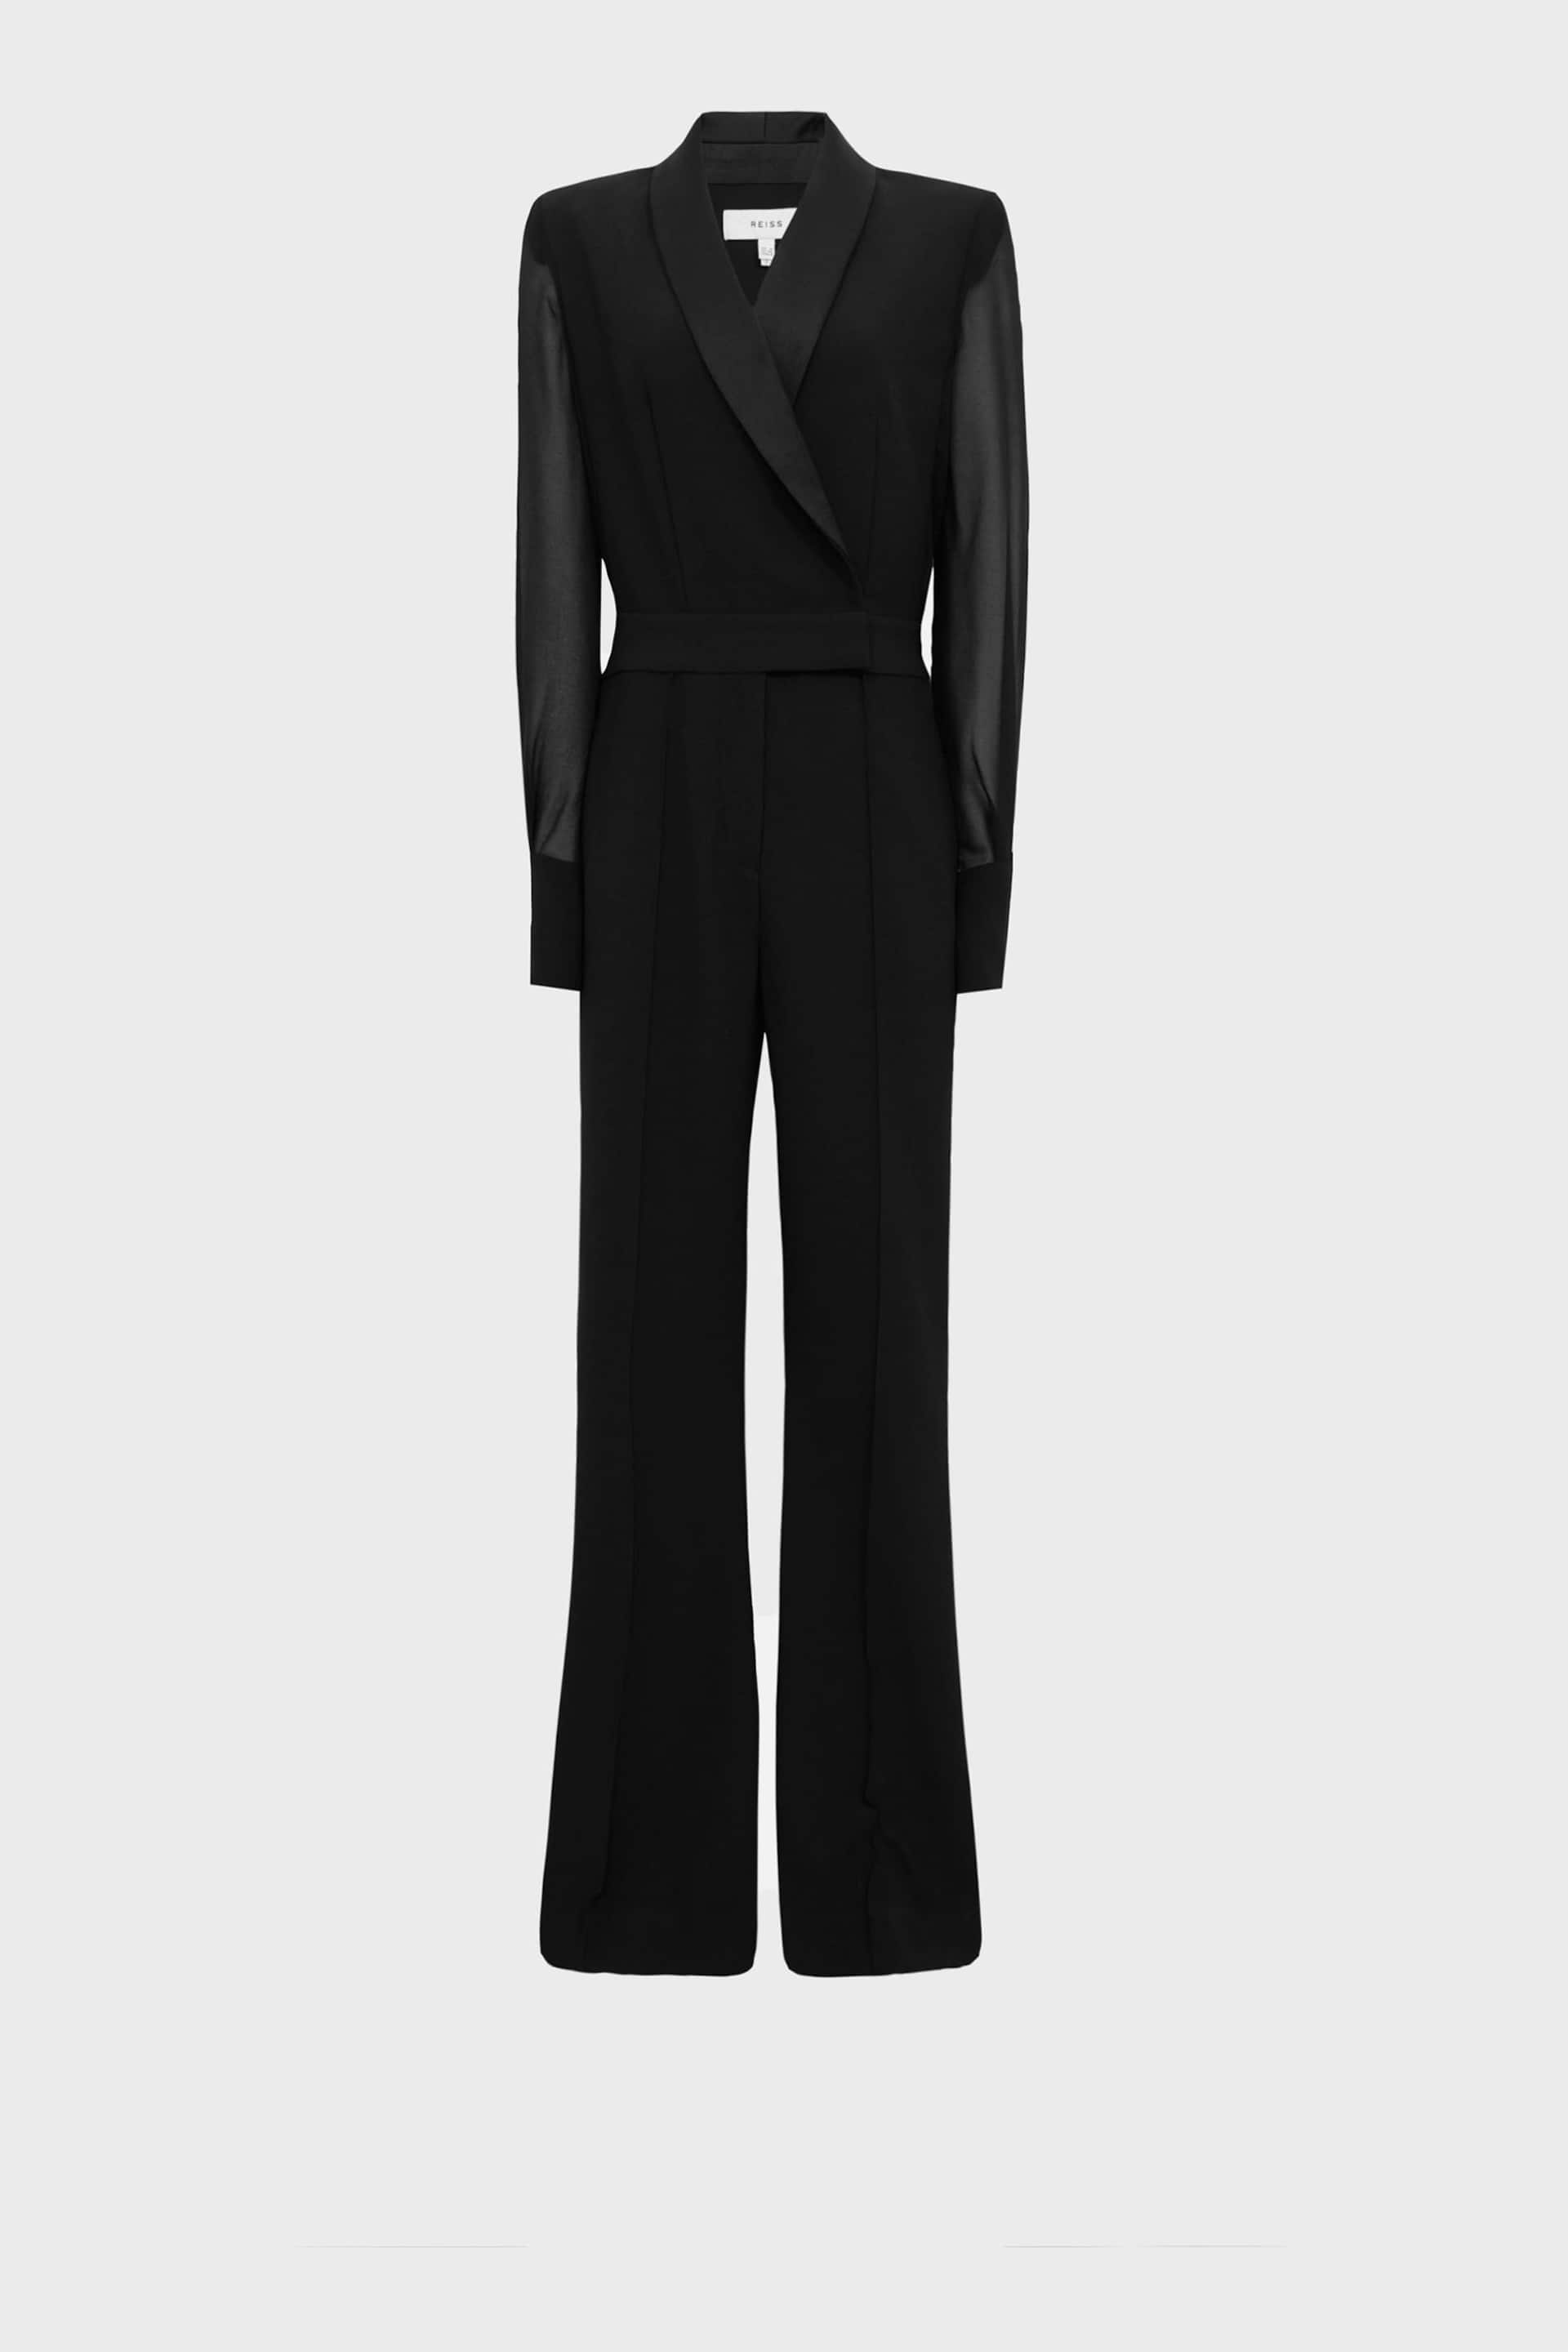 Reiss Black Lennon Tall Tuxedo Jumpsuit - Image 2 of 9